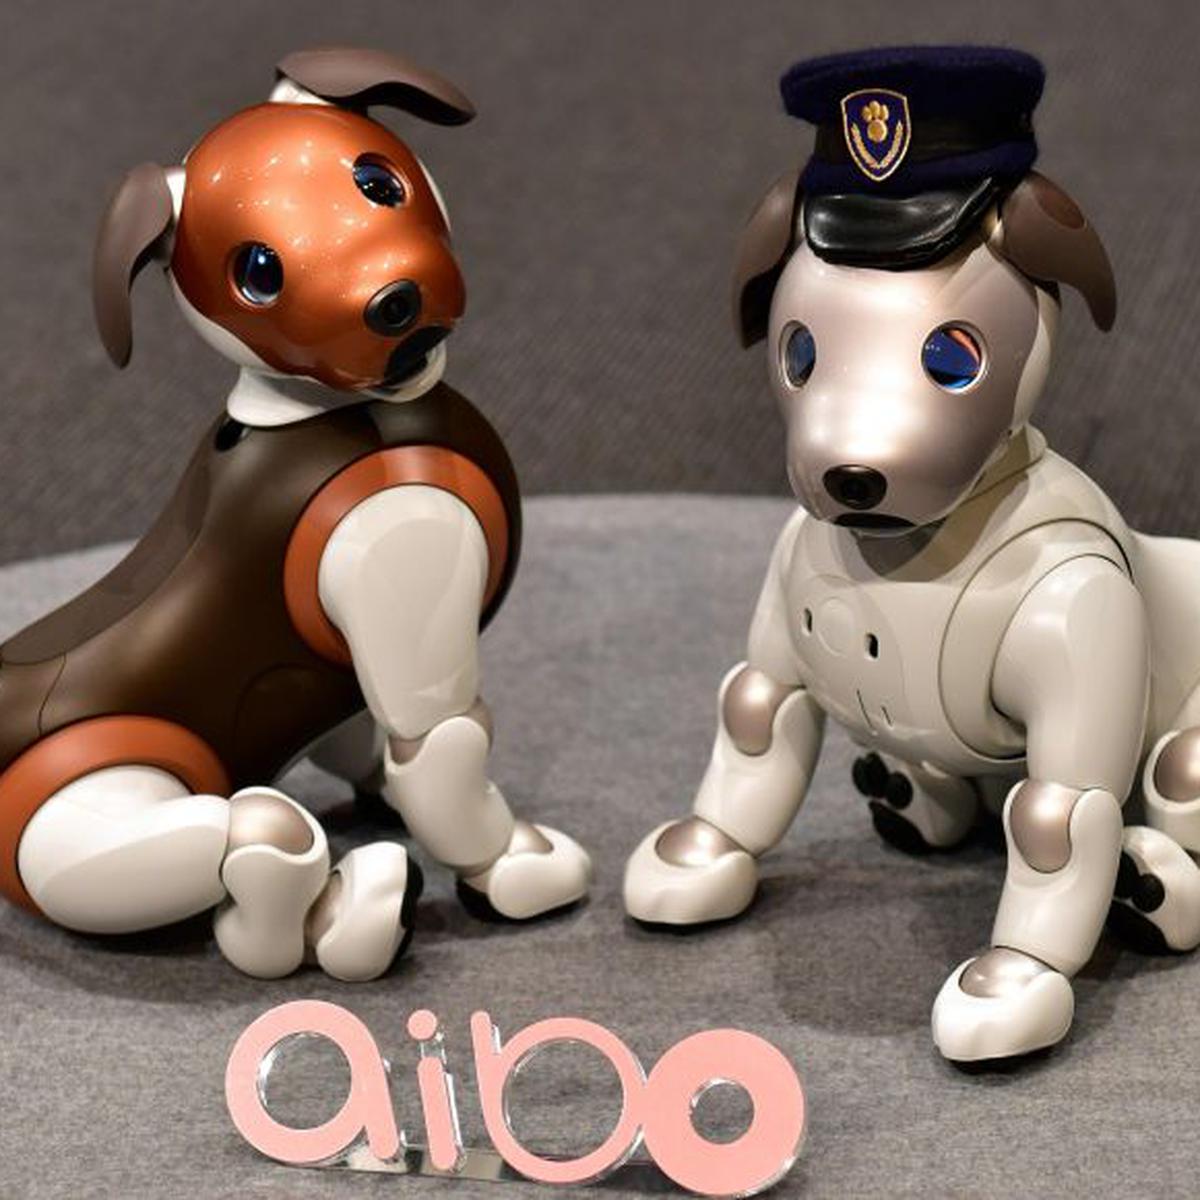 Sony presenta una versión 'policía' de su perro robot Aibo, FOTOS, TECNOLOGIA